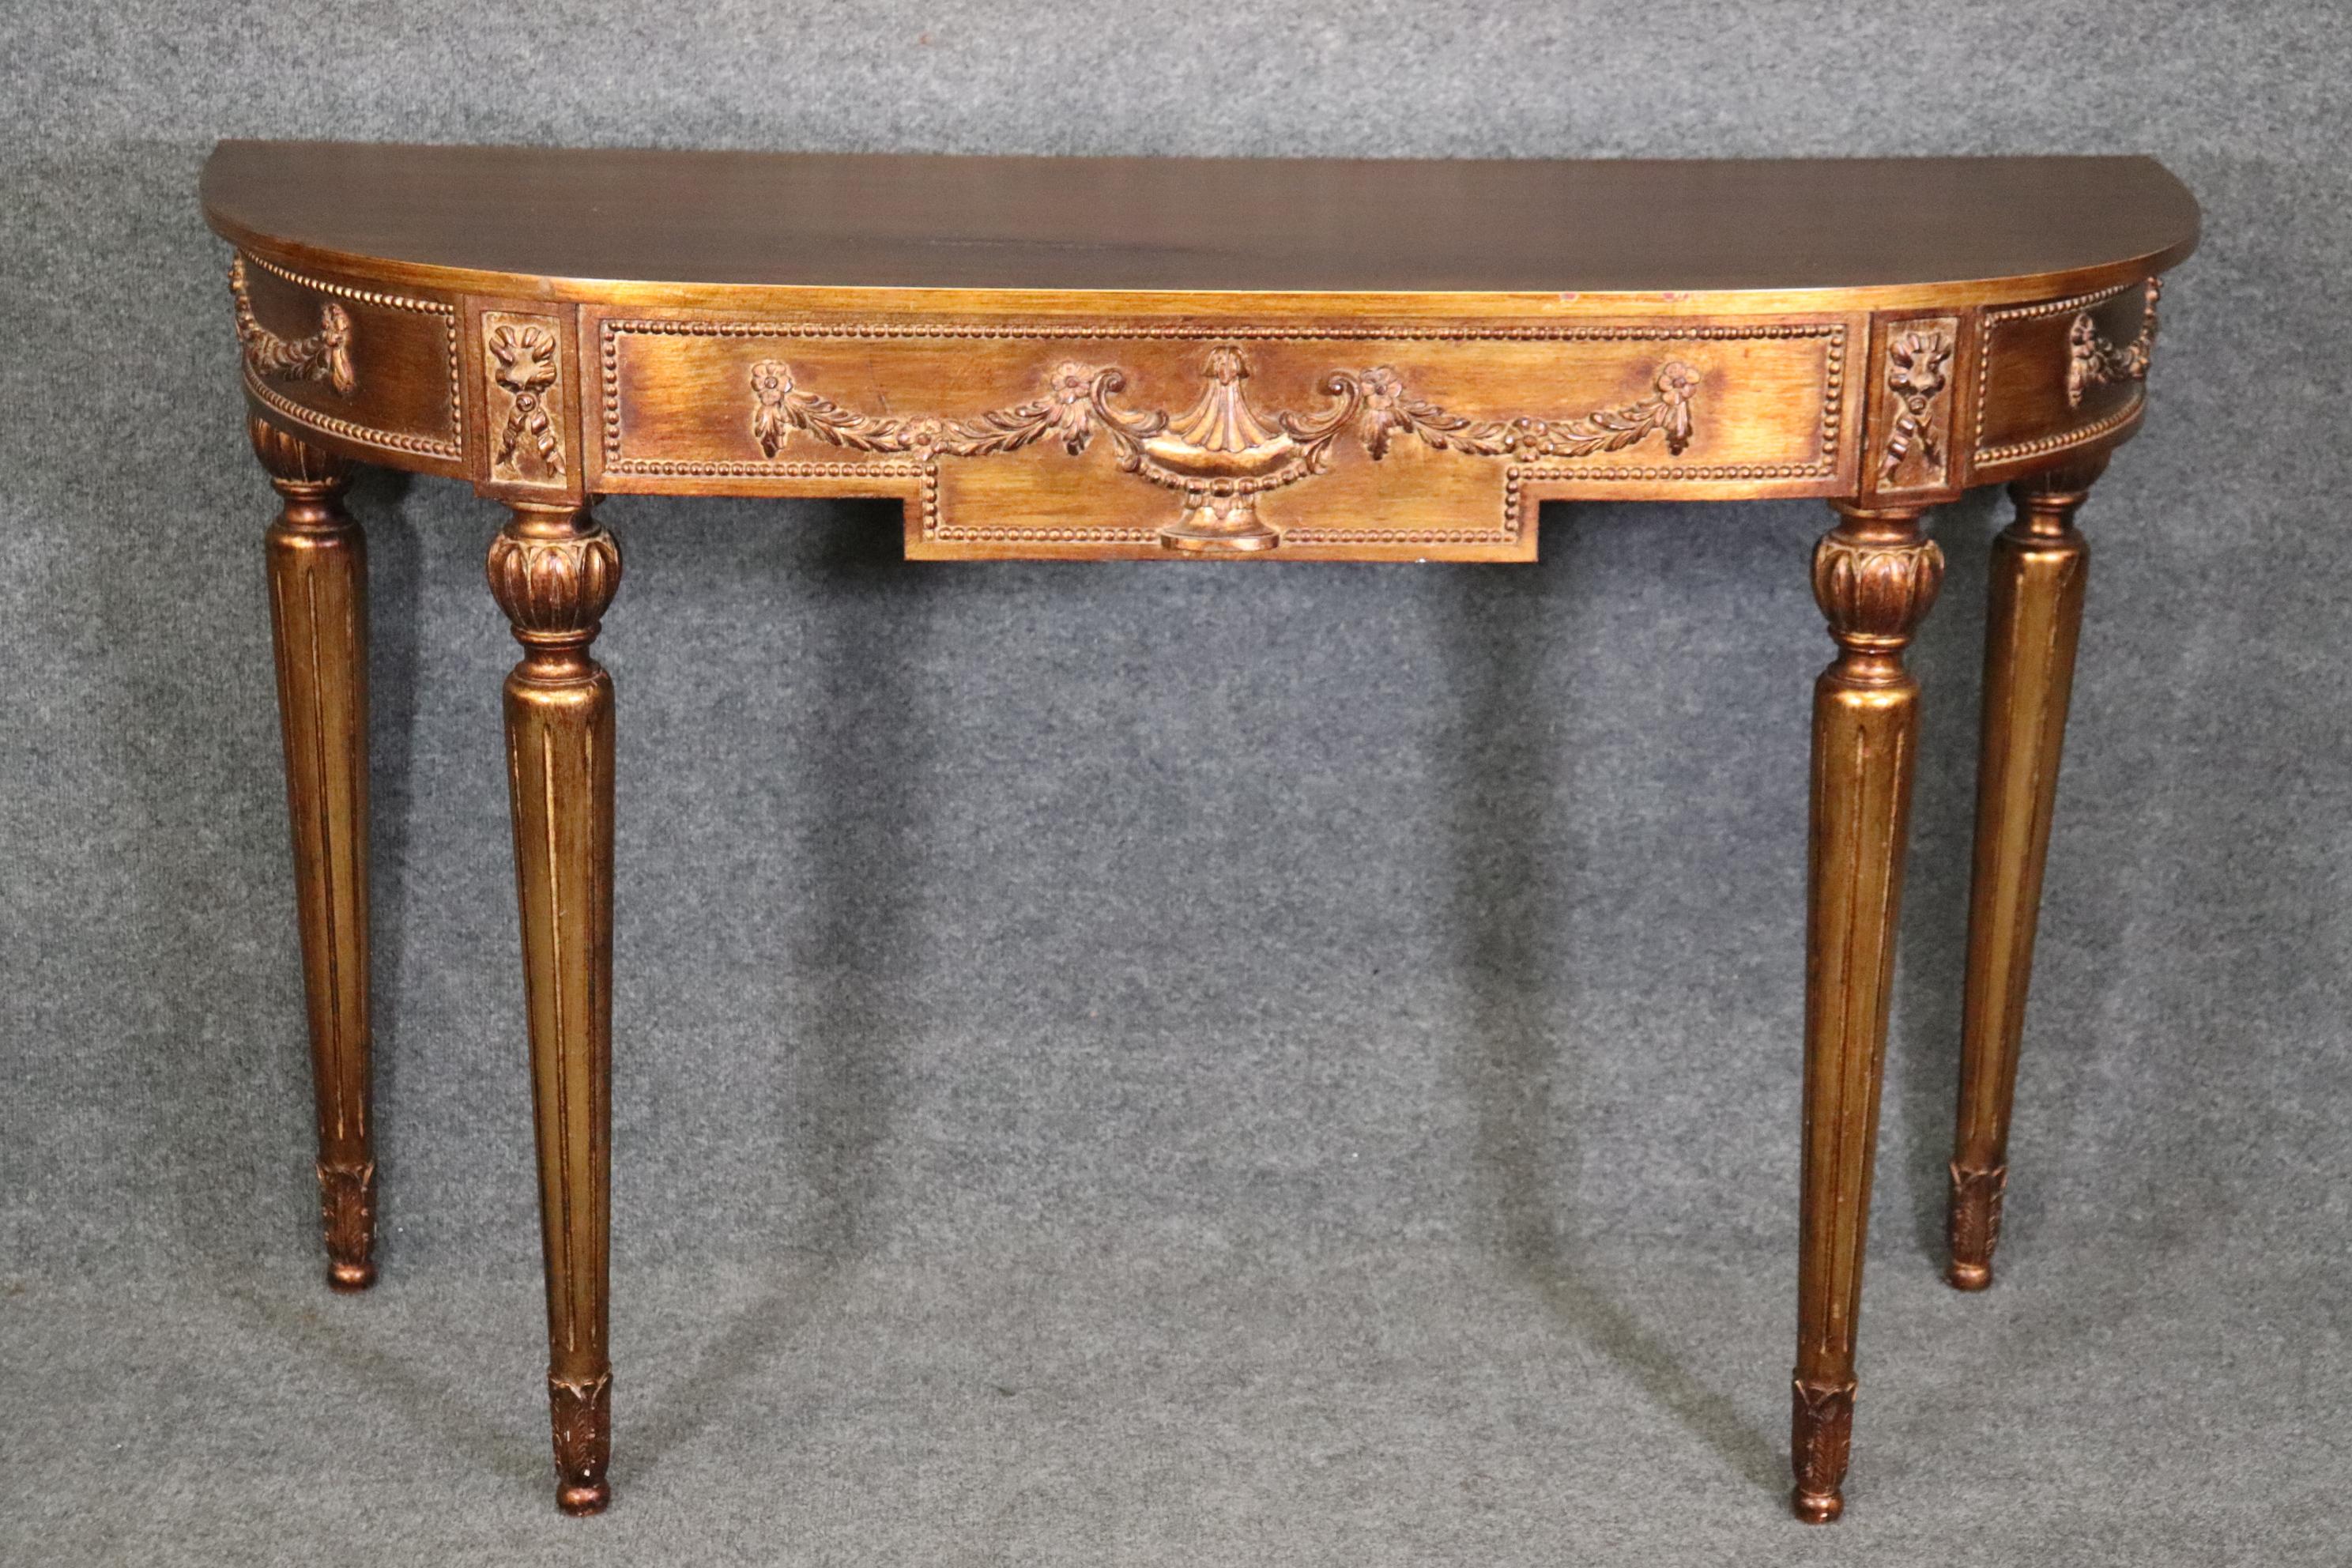 Dimensions- H : 34 3/4in W : 54in D : 18 1/2in 
Cette table console Demilune de style Louis XVI en vermeil est un ajout parfait à votre maison ou lieu de choix et apportera certainement un sentiment de luxe avec elle ! Cette pièce est dotée d'une